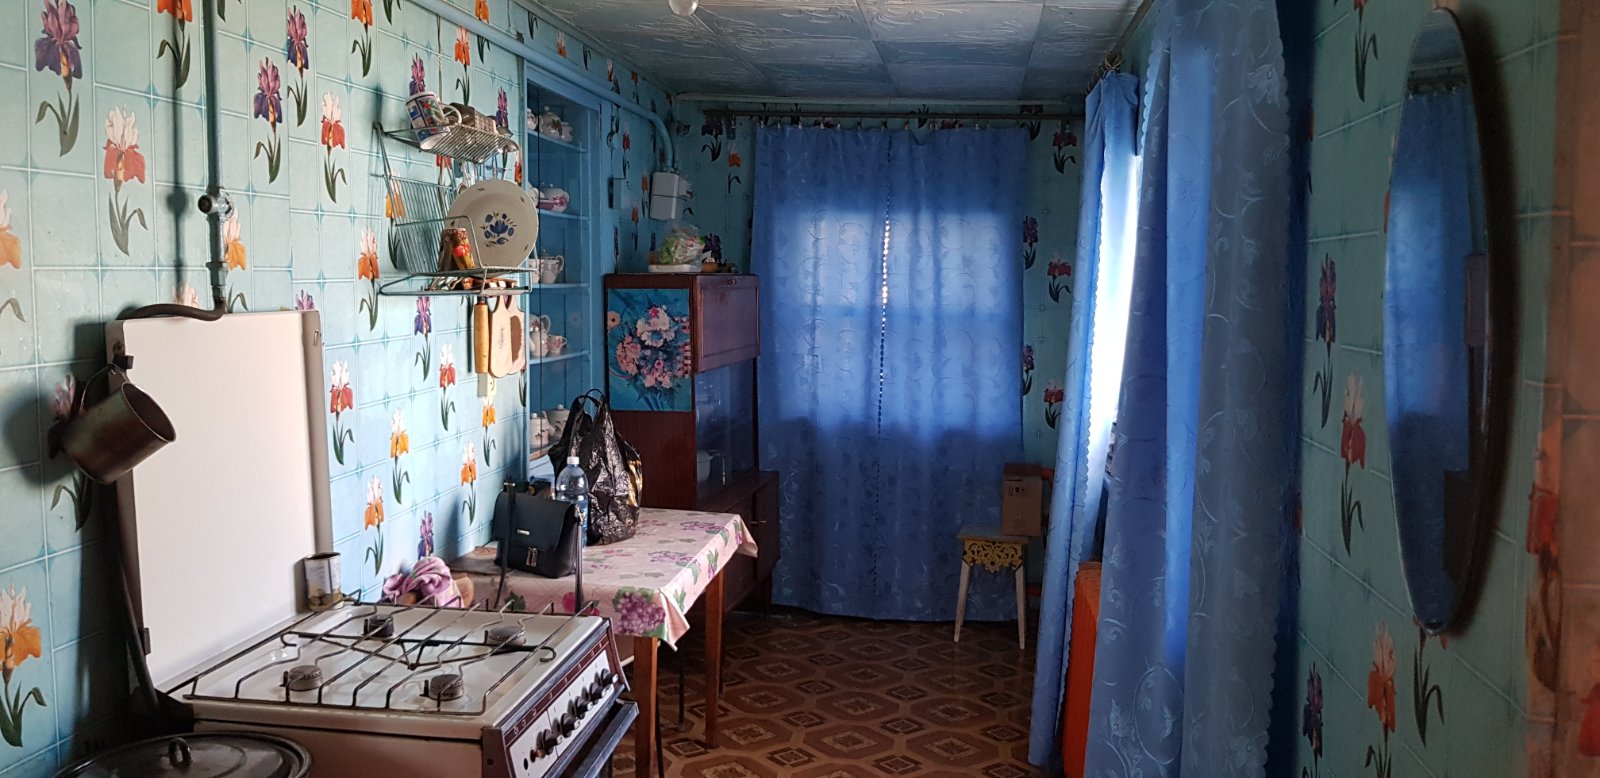 Купить дом на остановке Тагильская , | Объявления Орска и Новотроицка №5101